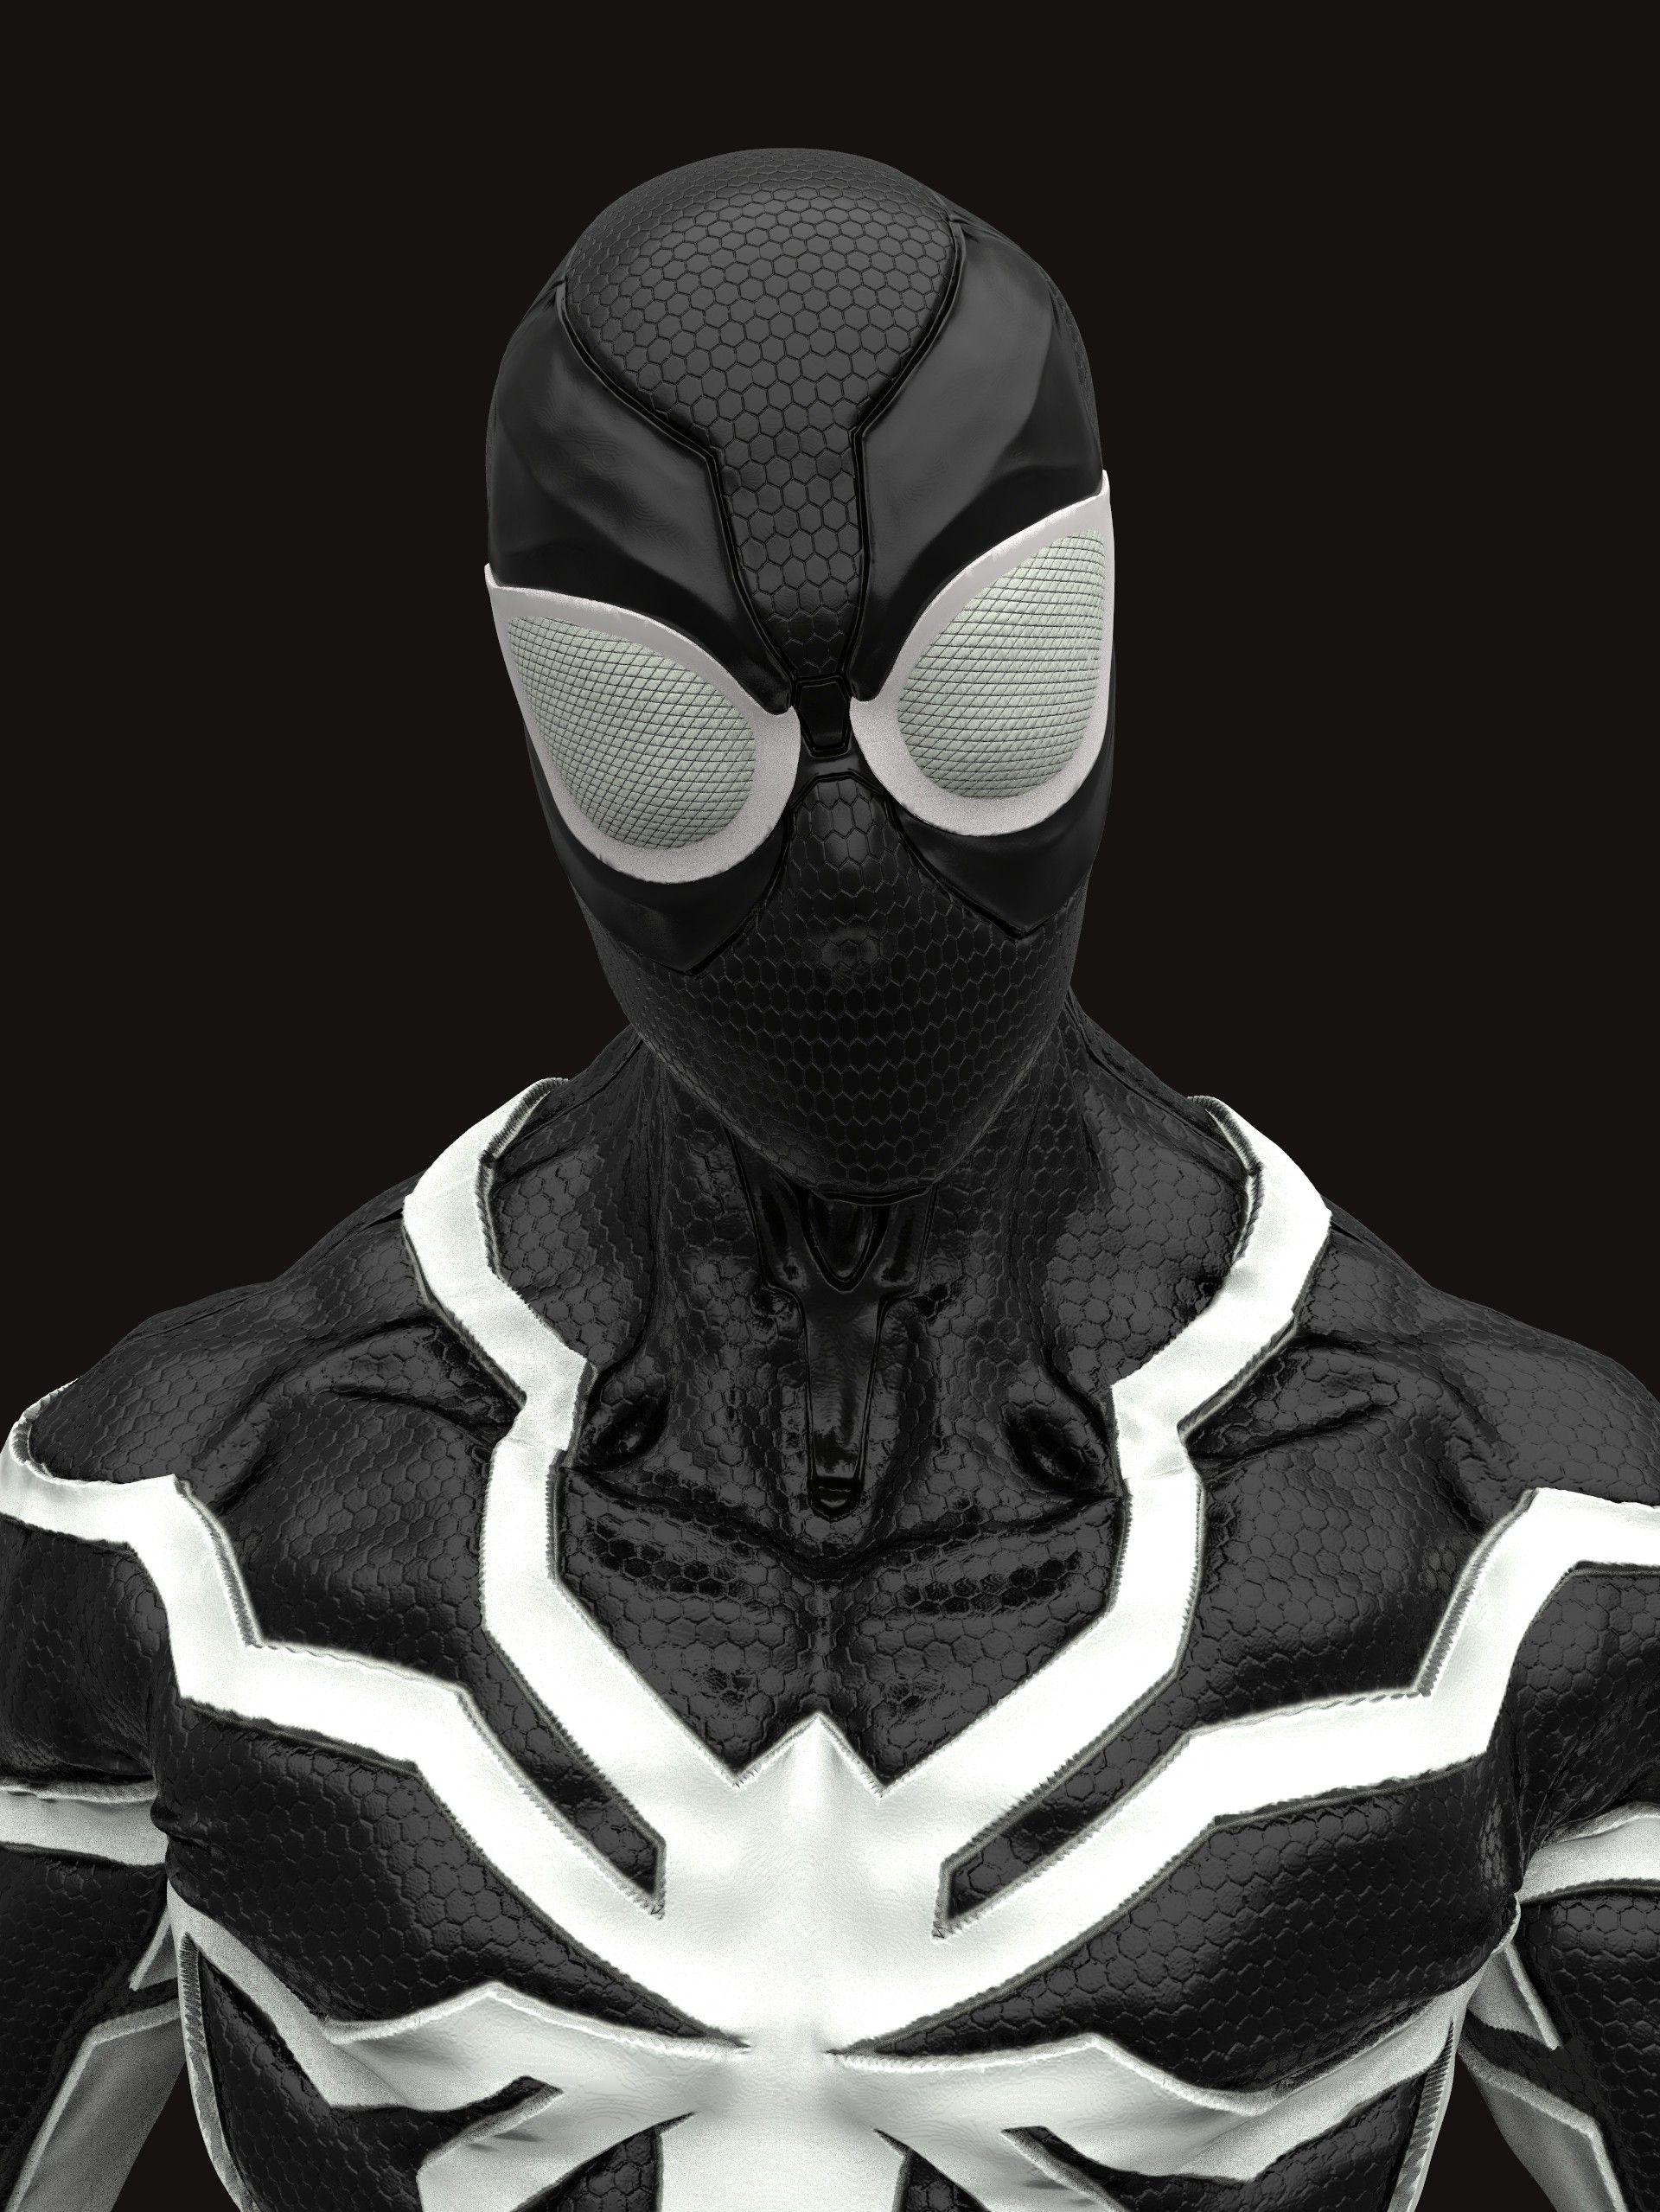 Spiderman Future foundation costume, Stivens trujillo